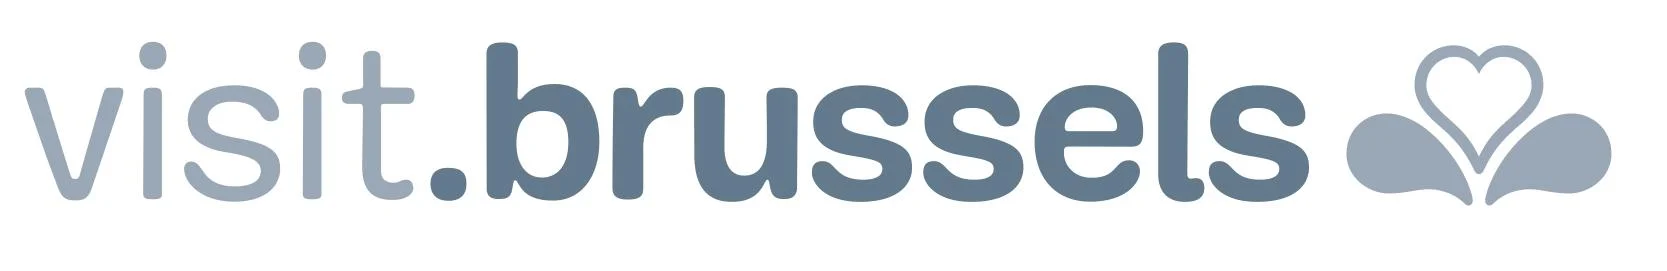 Visit Brussels logo